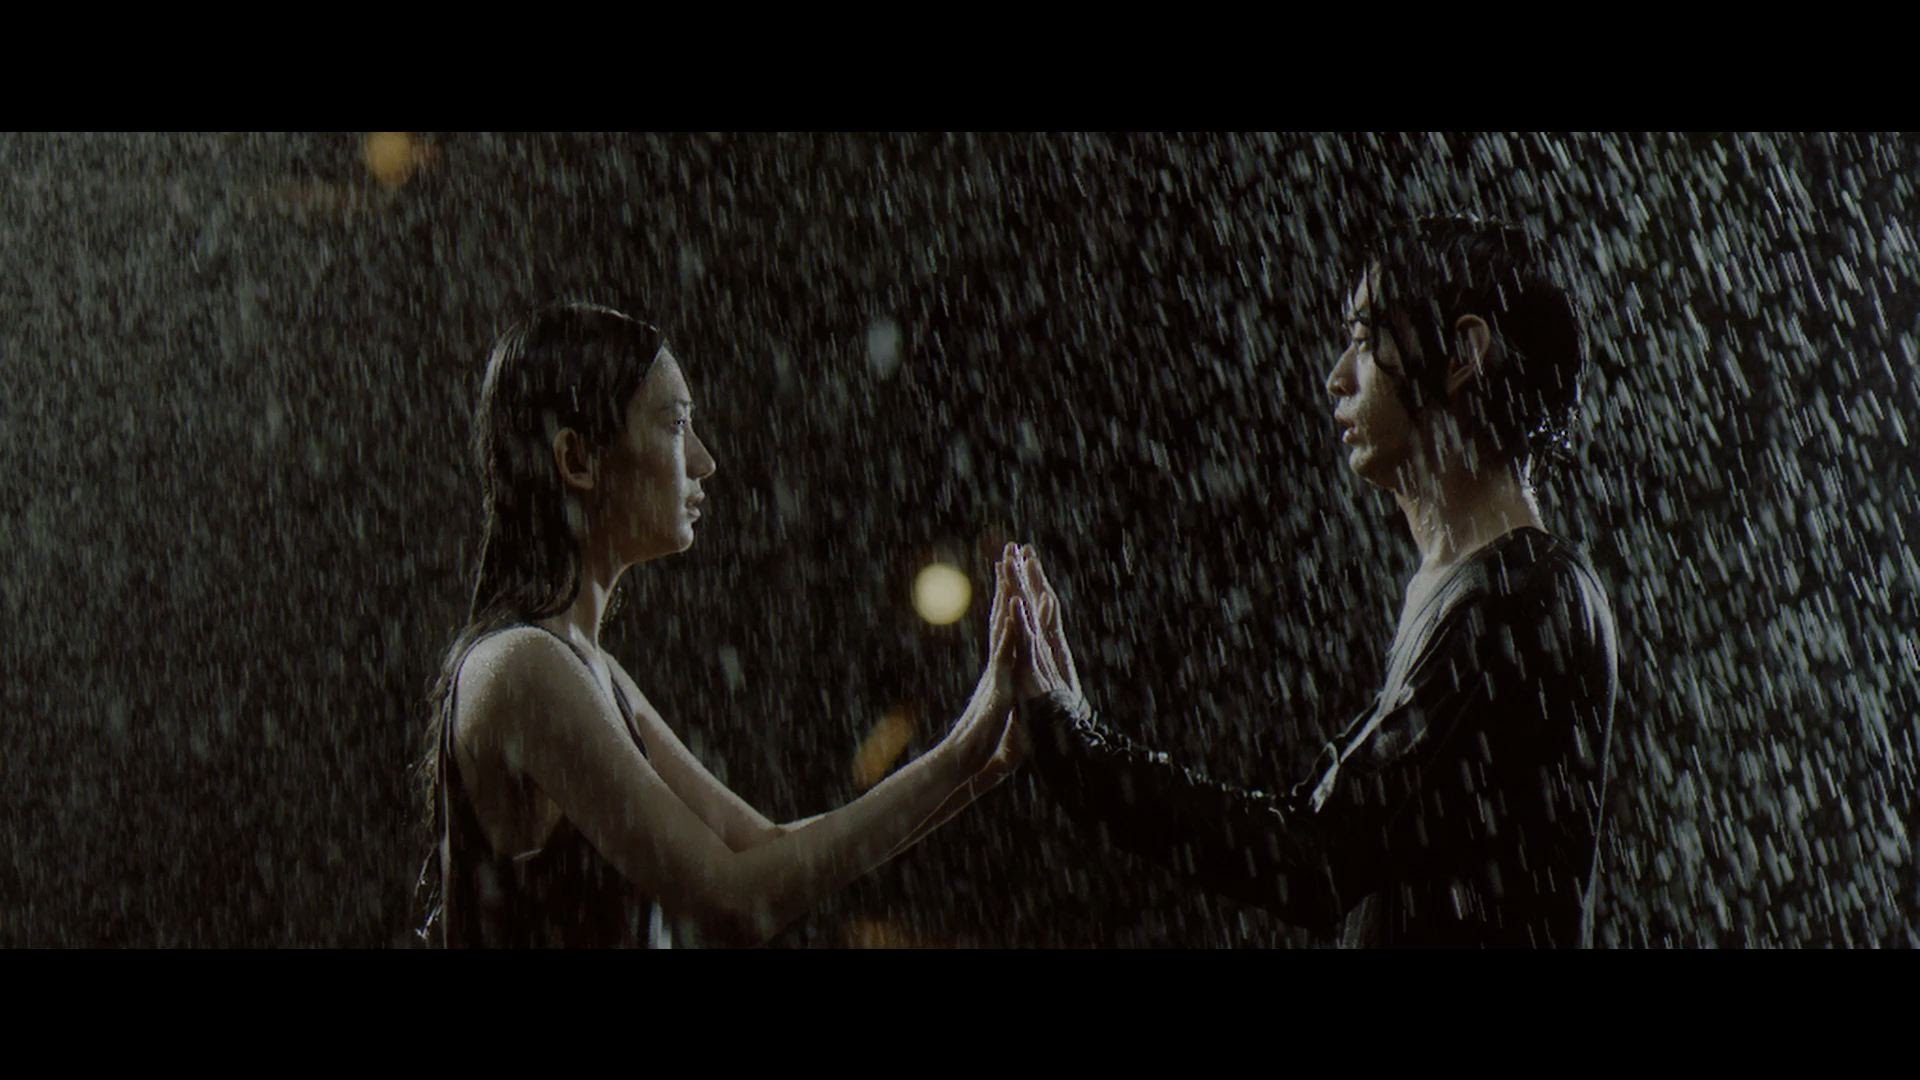 Aimer 『Stars in the rain』※Taka（ONE OK ROCK）楽曲提供 - YouTube